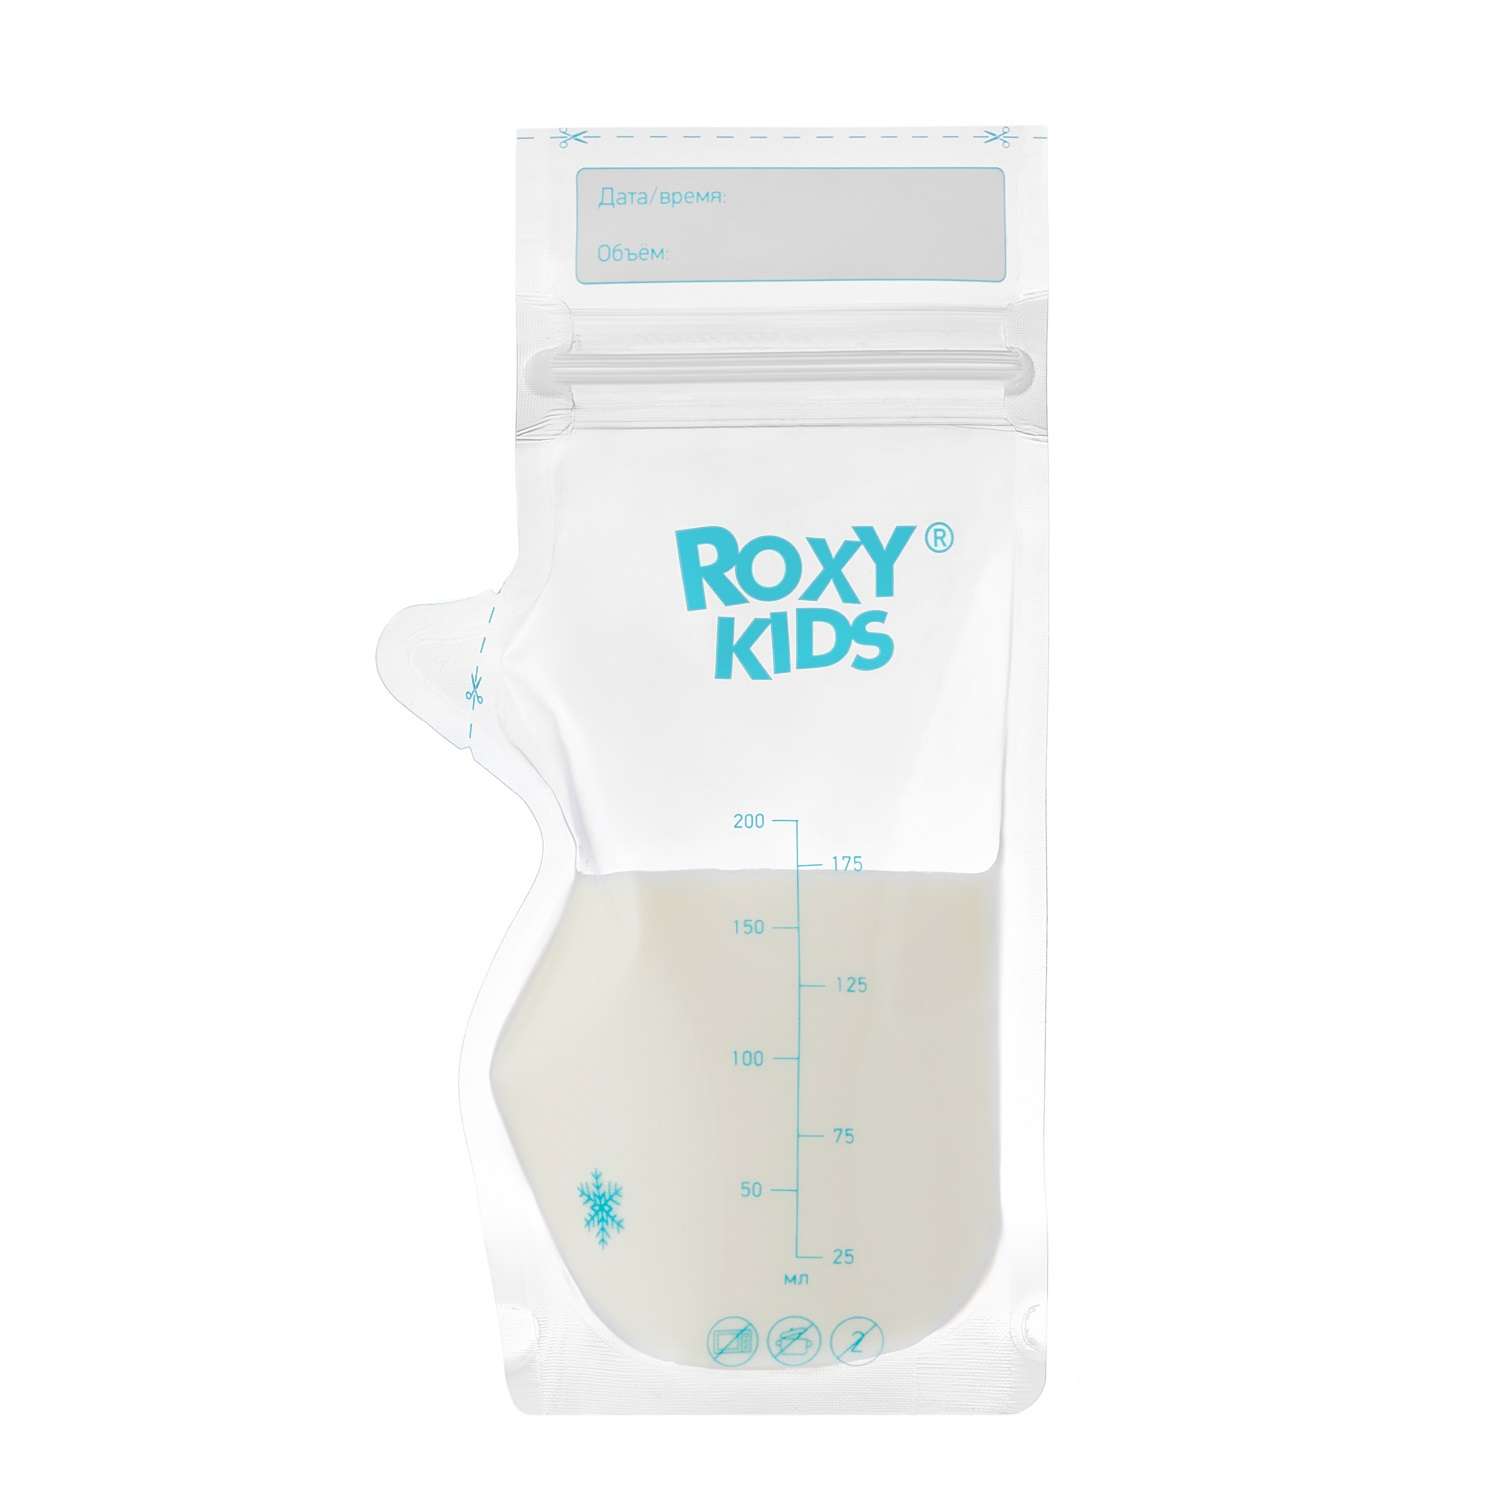 Пакеты одноразовые ROXY-KIDS для хранения грудного молока 25 шт - фото 7